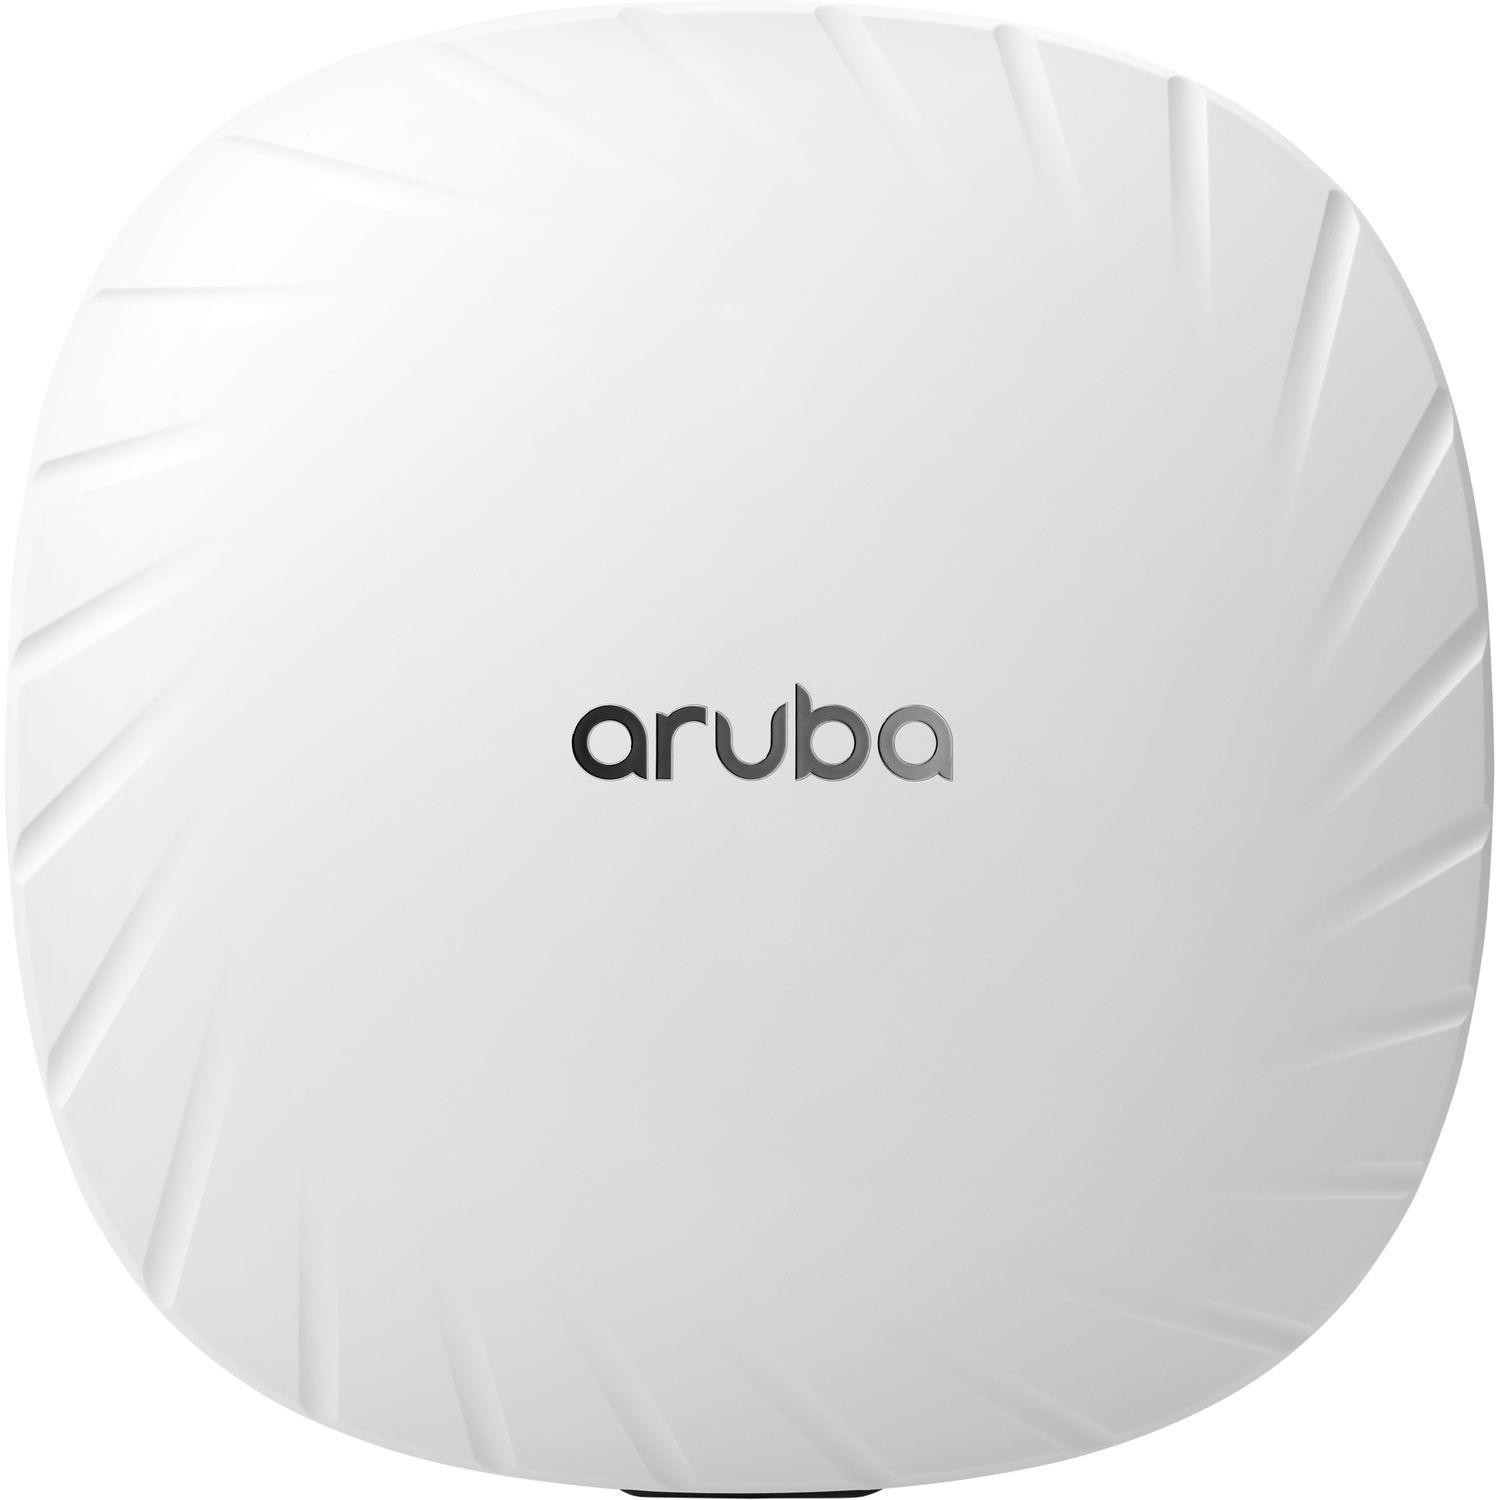 HPE Aruba AP-515 a € 976,20 (oggi) | Migliori prezzi e offerte su idealo